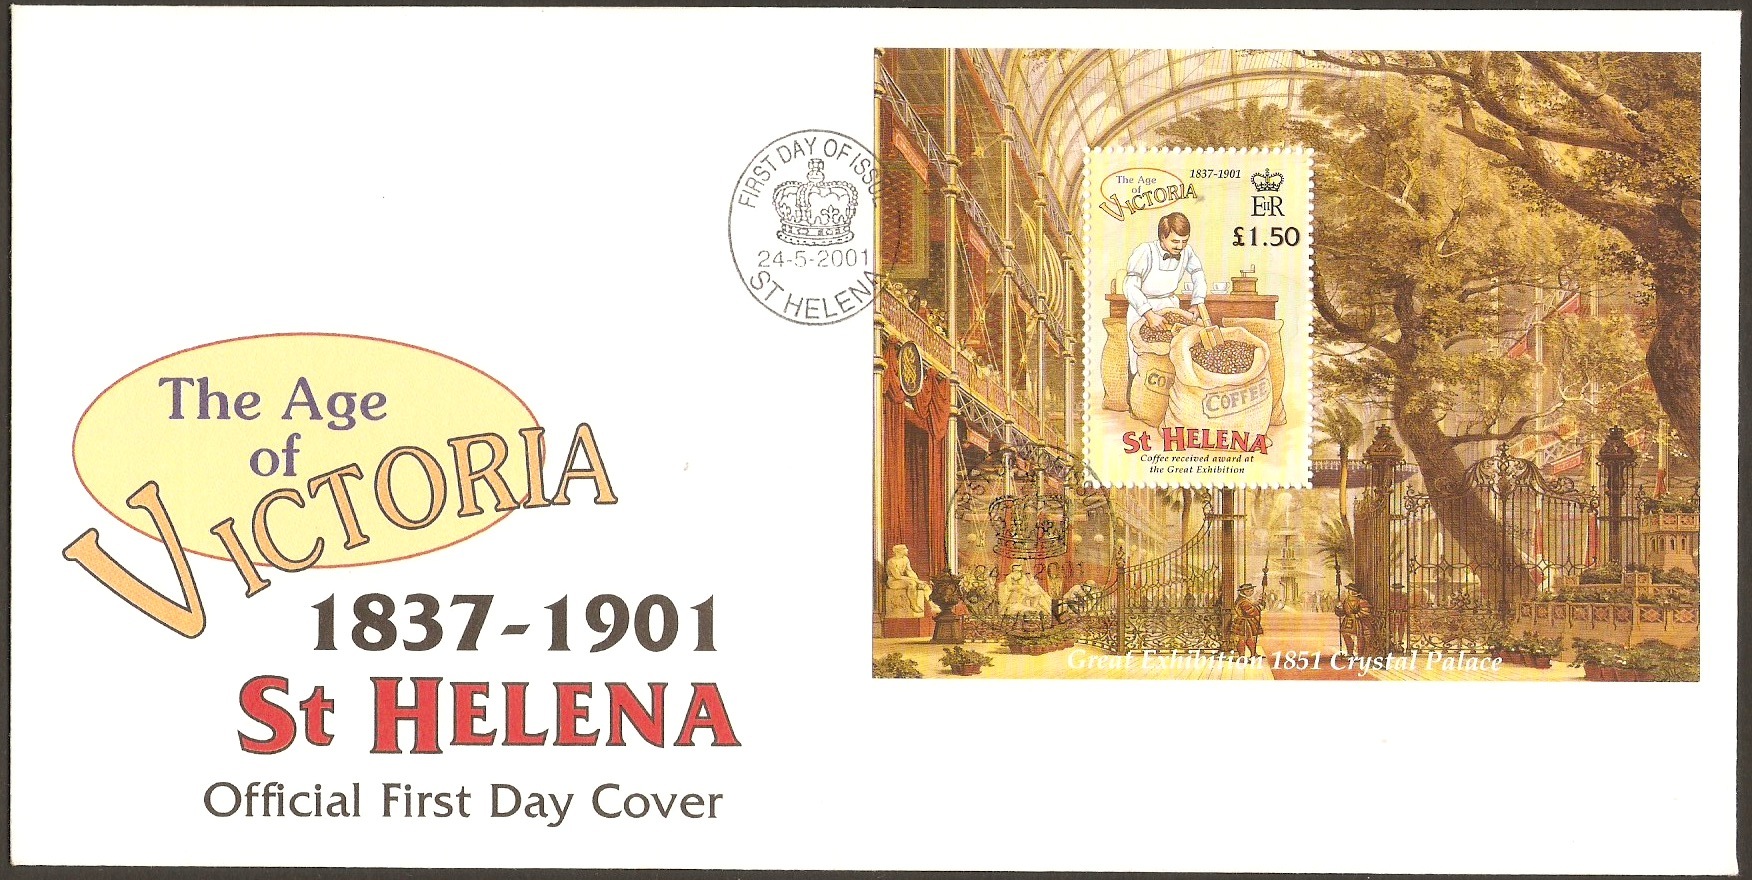 St Helena Postal Ephemera